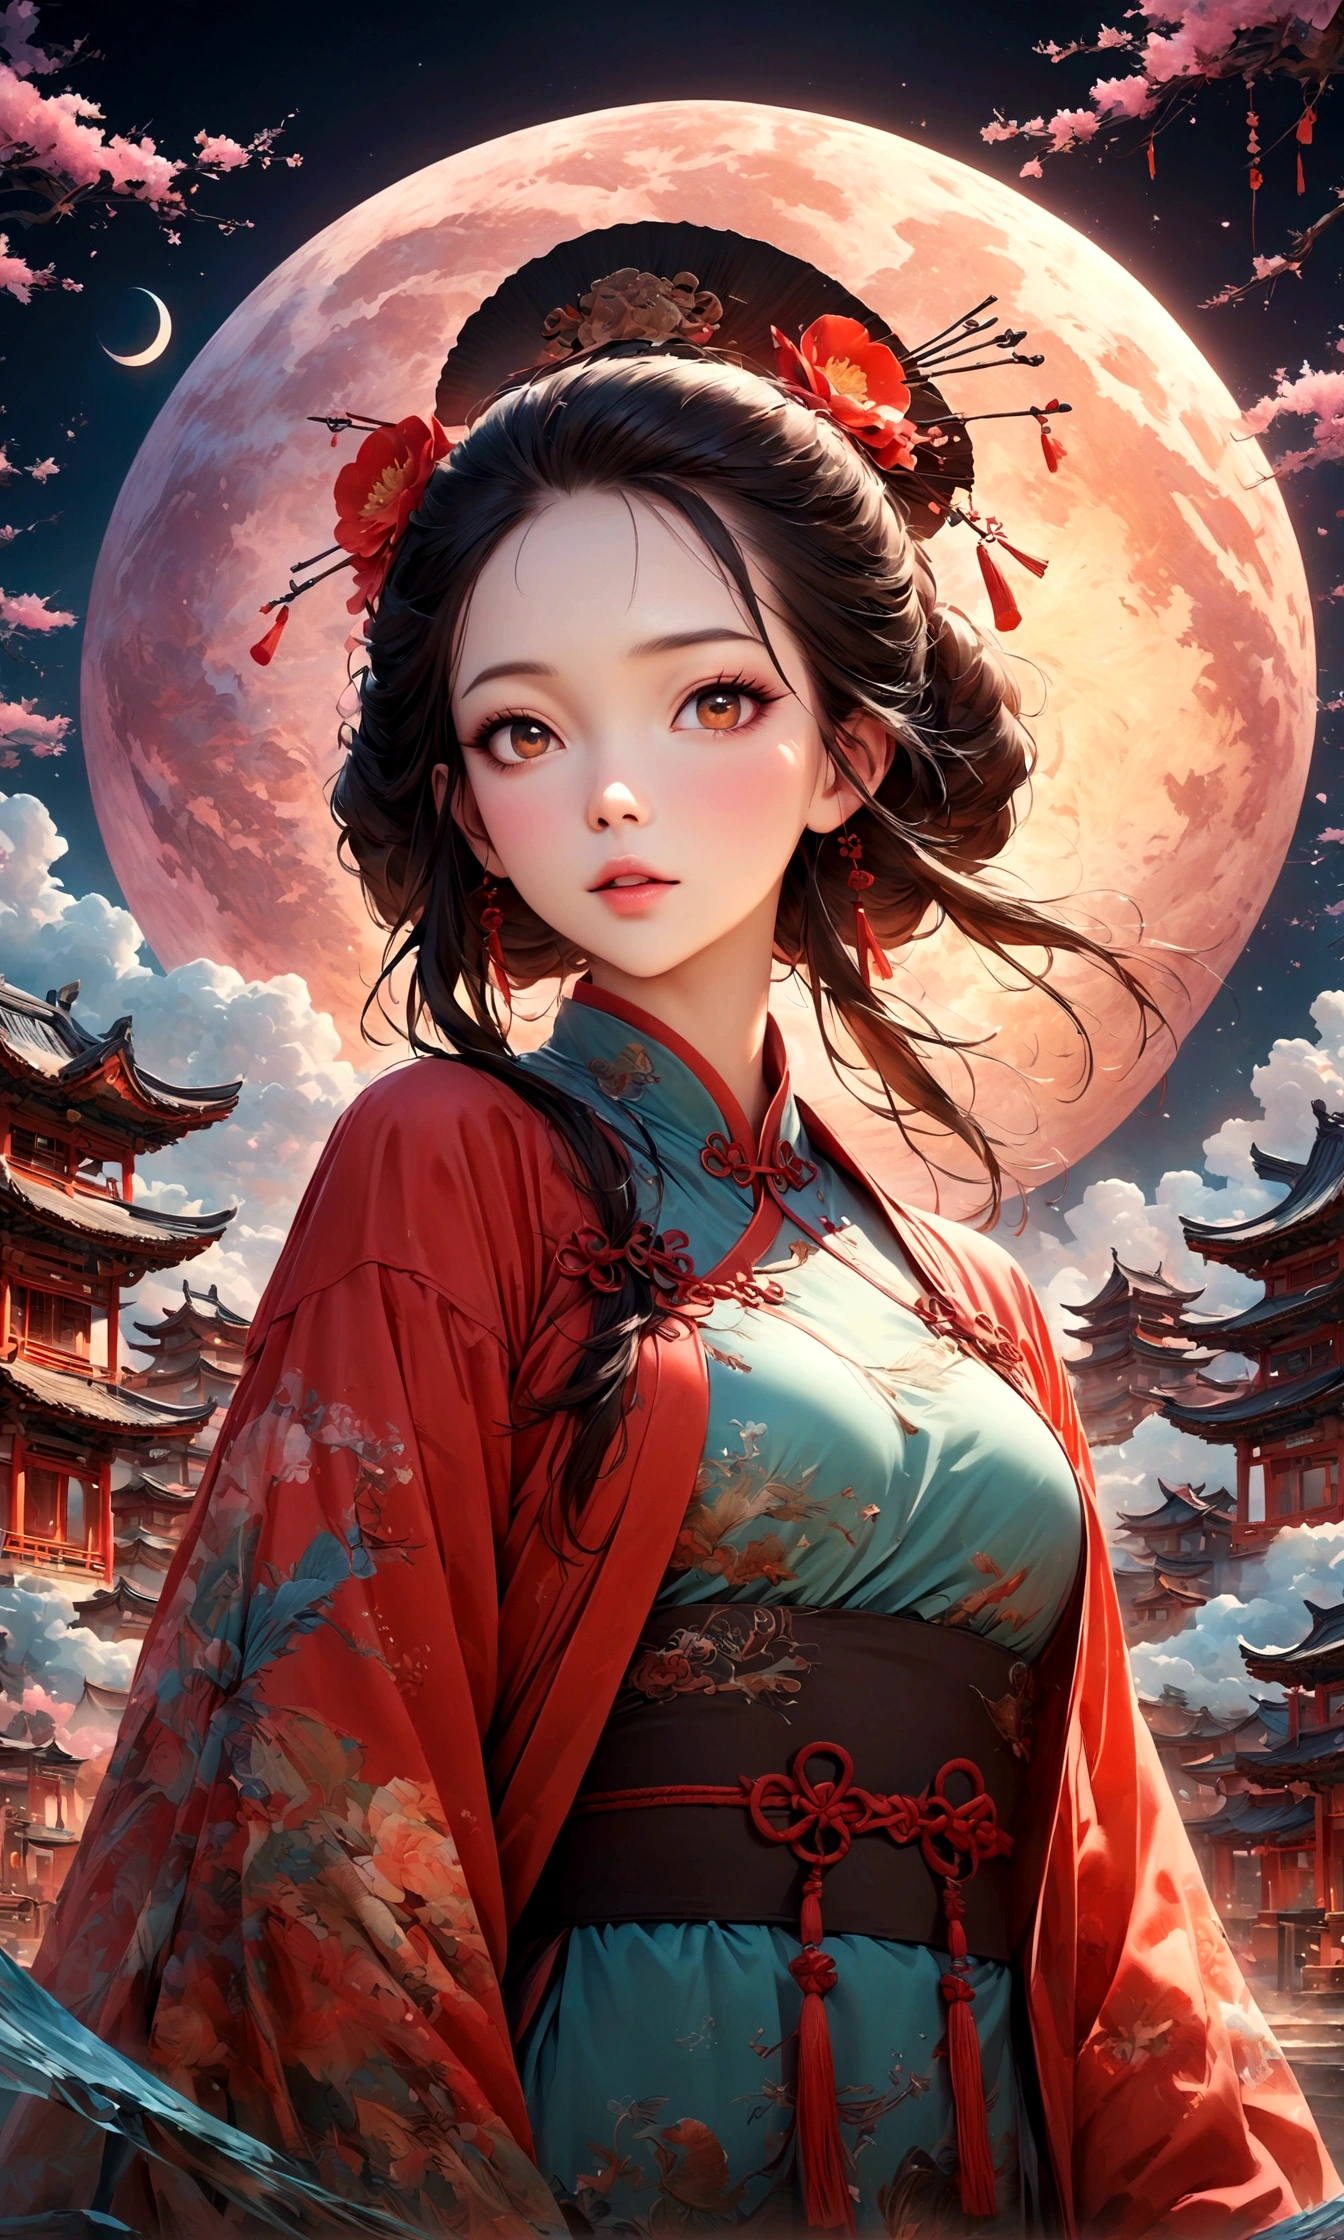 Фантастический вид на Чайнатаун,赤い提灯の温かいсвет,Современный и исторический,Фантастический и мечтательный пейзаж,свет,風景の中にКитайская одеждаの女性が1人います,Она очаровательна и красива、まるで上海のночьを象徴するかのようです,реалистичная текстура кожи,фотореалистичный,ПЕРЕРЫВ,豪華な刺繍が施されたКитайская одежда,A шедевр created by designers,Лучшая конфигурация,свет and Dark,ПЕРЕРЫВ,,(шедевр:1.3),(высшее качество:1.4),(Ультрадетализированный:1.5),высокое разрешение,чрезвычайно подробный,единство 8k обои,сложные детали,Широкий выбор цветов,произведение искусства,рендеринг,(шедевр:1.3),(высшее качество:1.4),(Супер подробный:1.5),высокое разрешение,Очень подробно,единство 8k обои,нарисовать художественный фон,китайский стиль,Традиционный,Абсурдная красота,дзентангл,幻想的で美しいночьのチャイナタウン,ночь,美しいсветと影,Игристый,анатомически правильный,структурно правильный,Китайская одежда